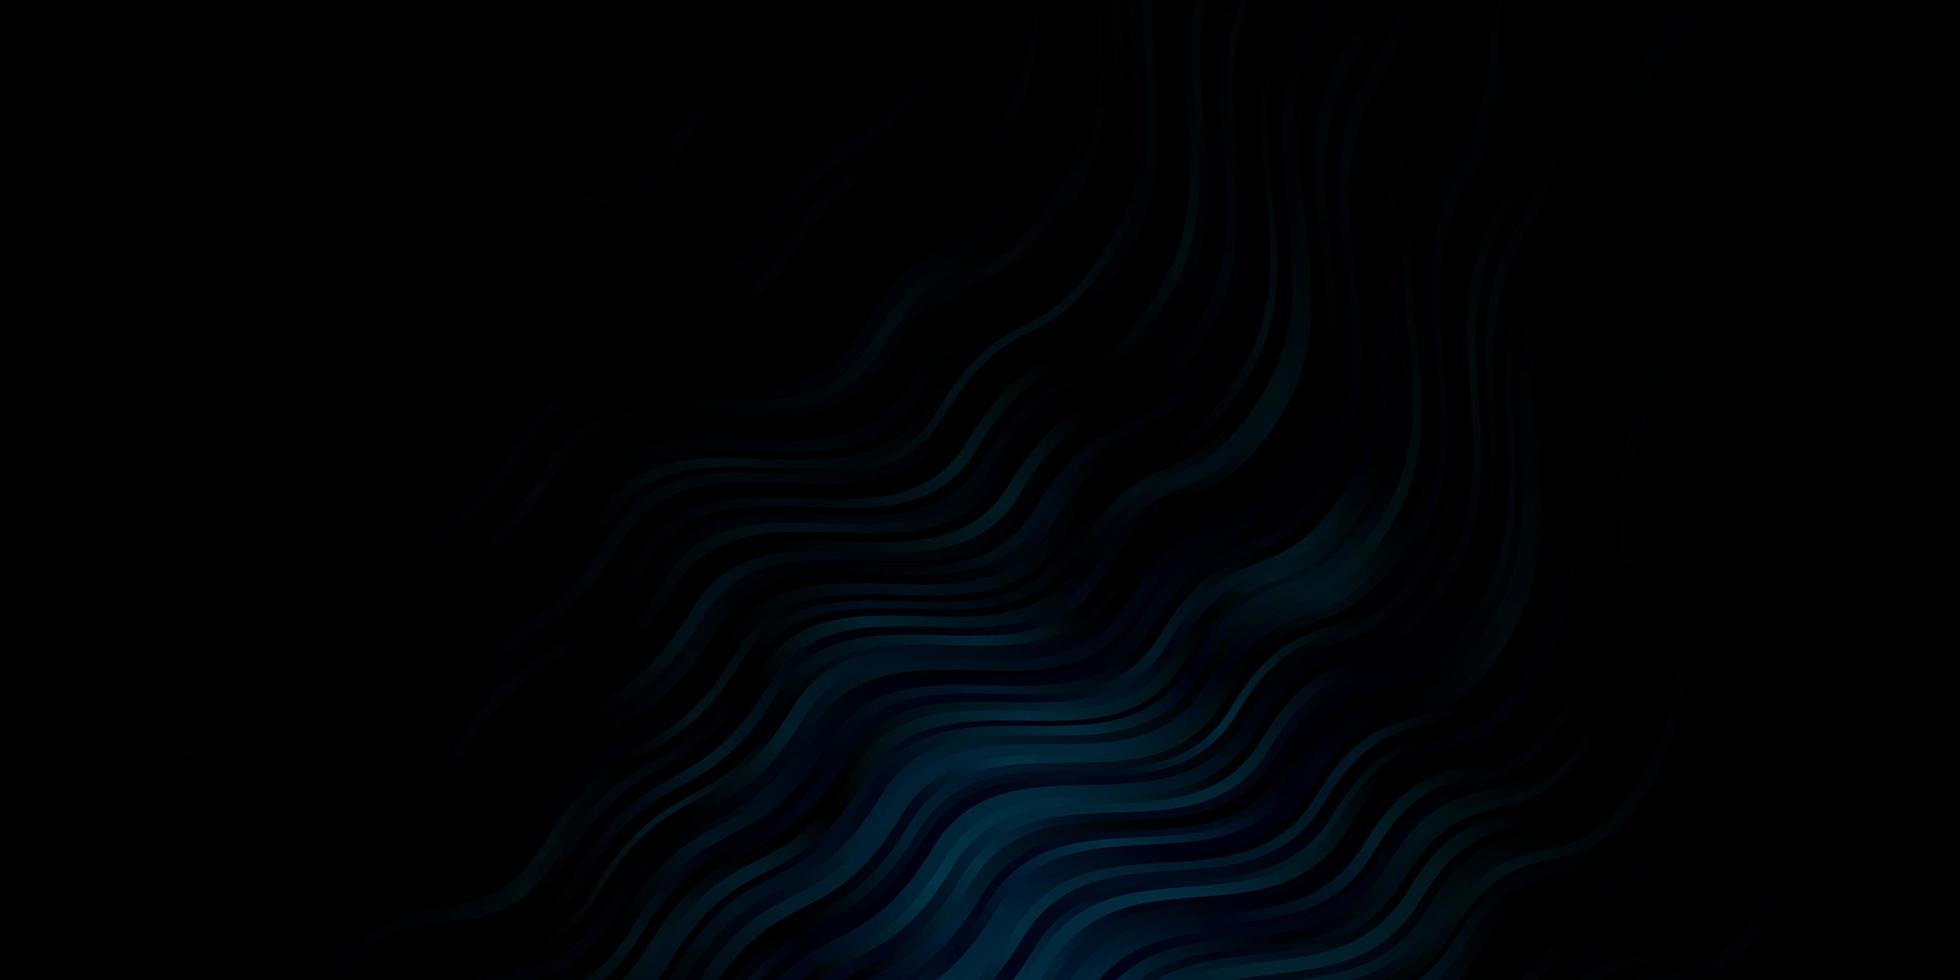 padrão de vetor azul escuro com curvas ilustração abstrata com arcos de gradiente melhor design para seus banners de cartazes